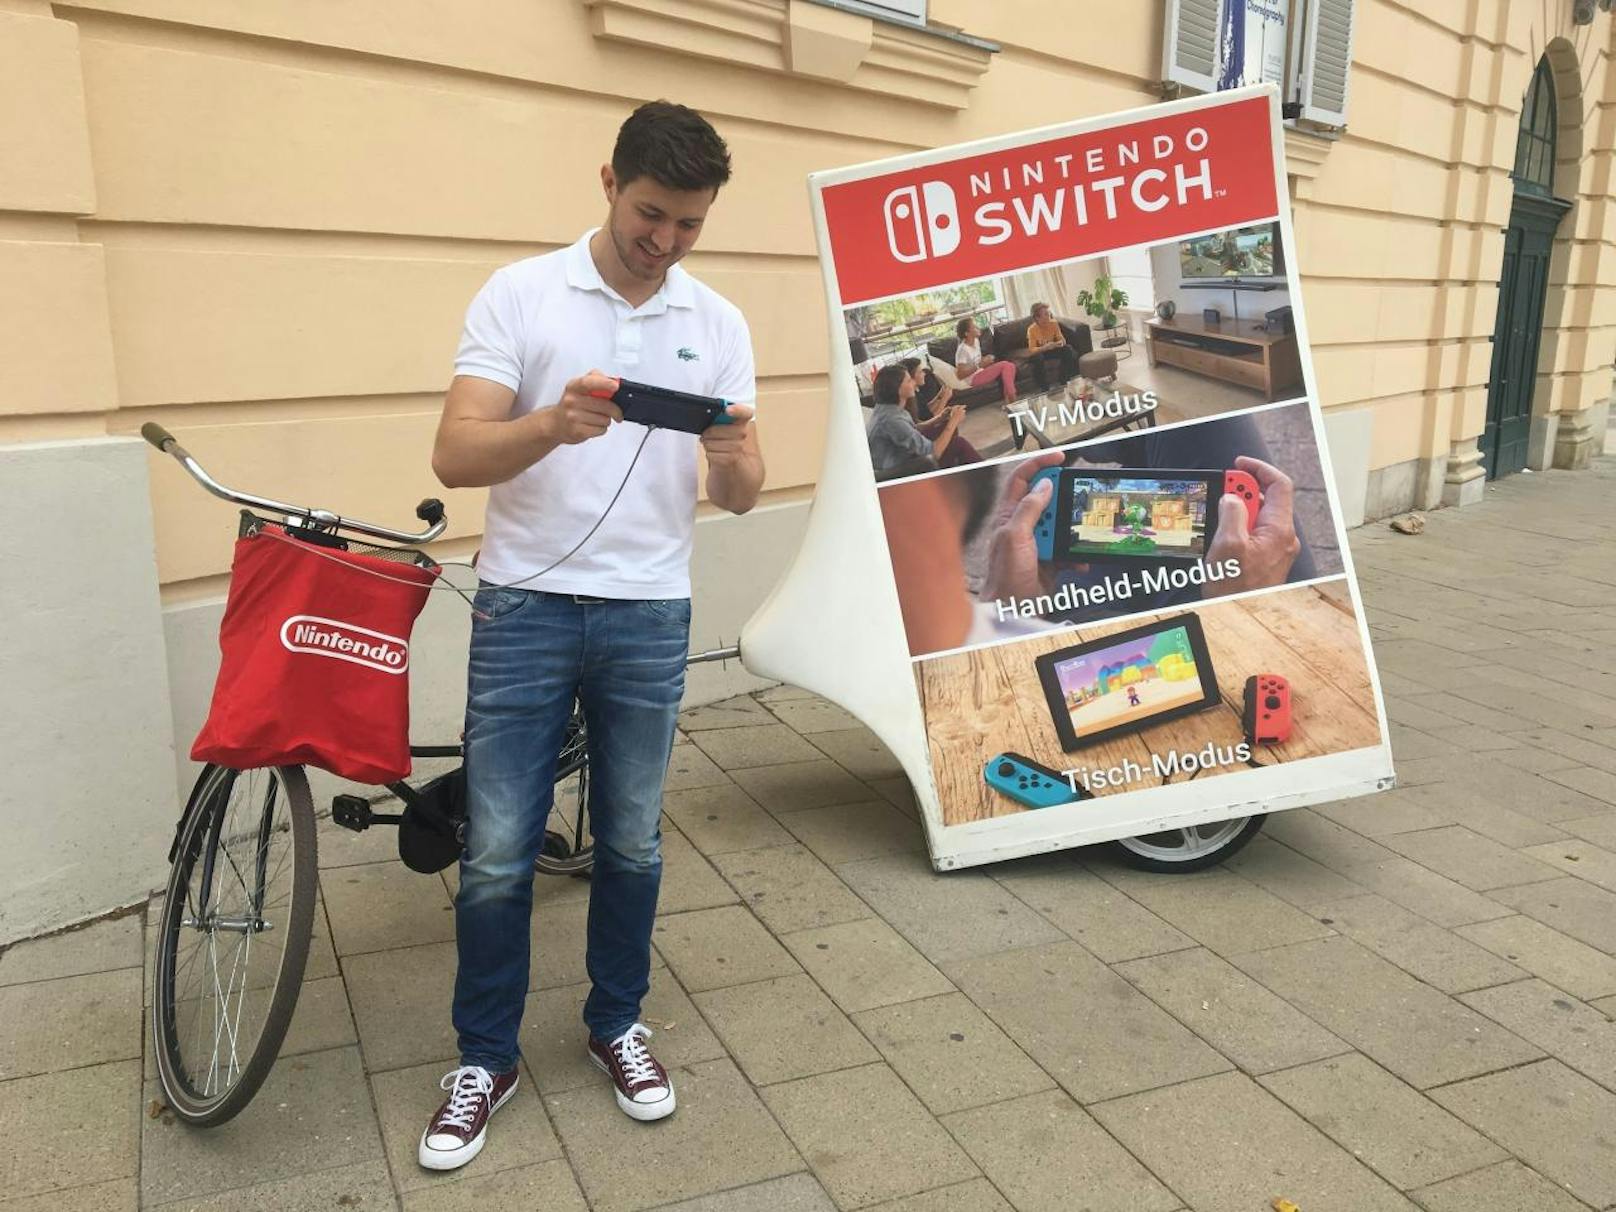 Nintendo Switch auf der Mariahilfer Straße.